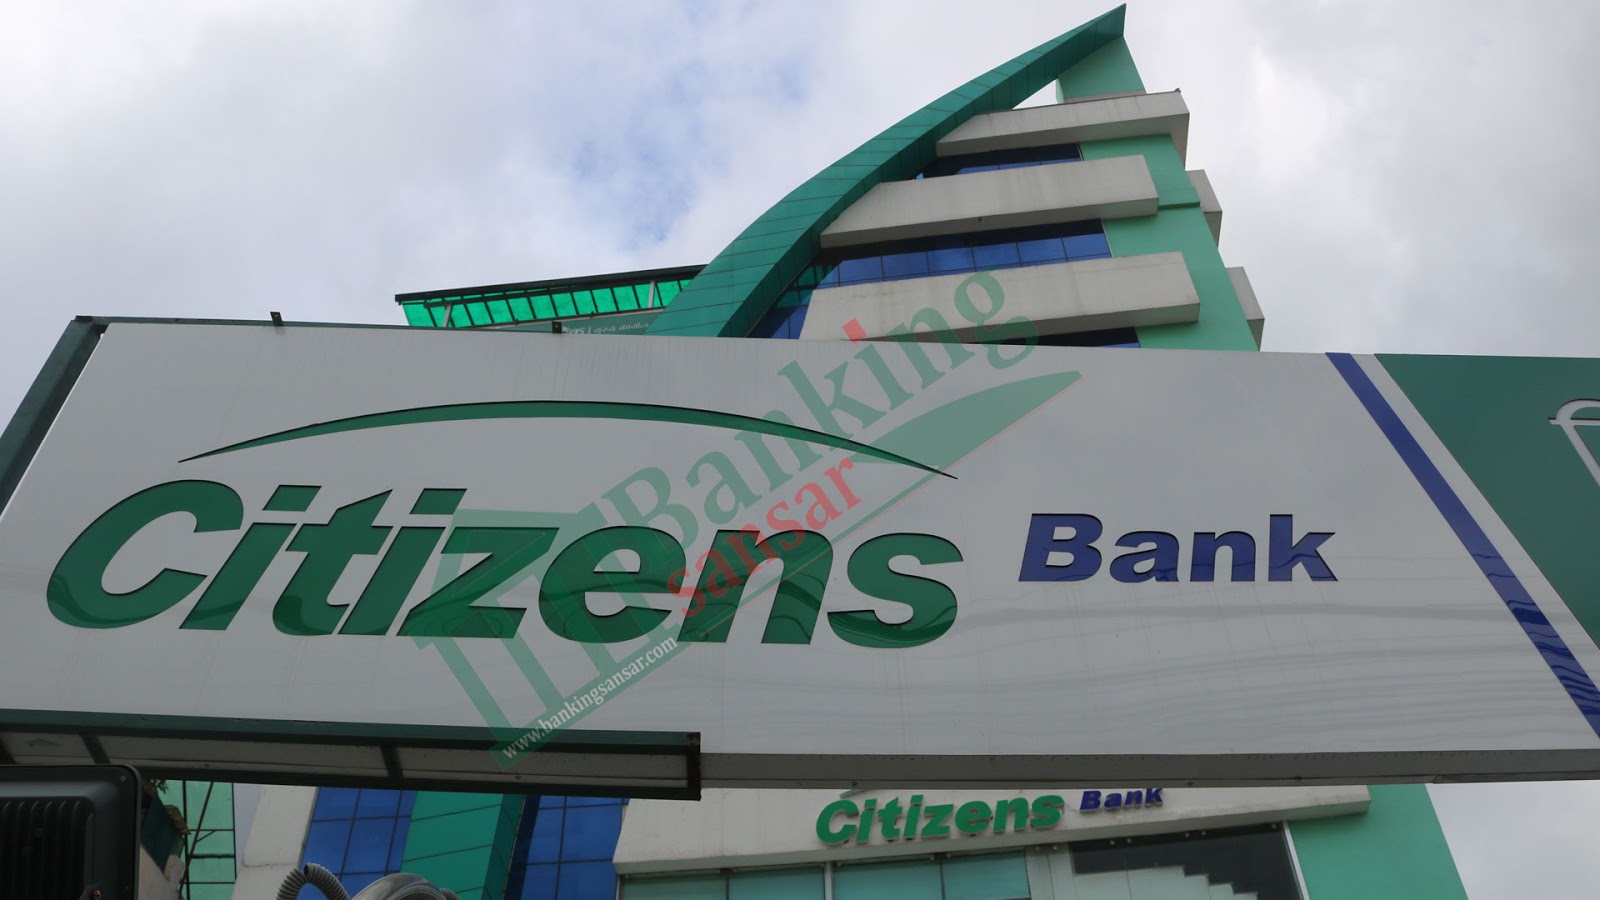  Citizens Bank